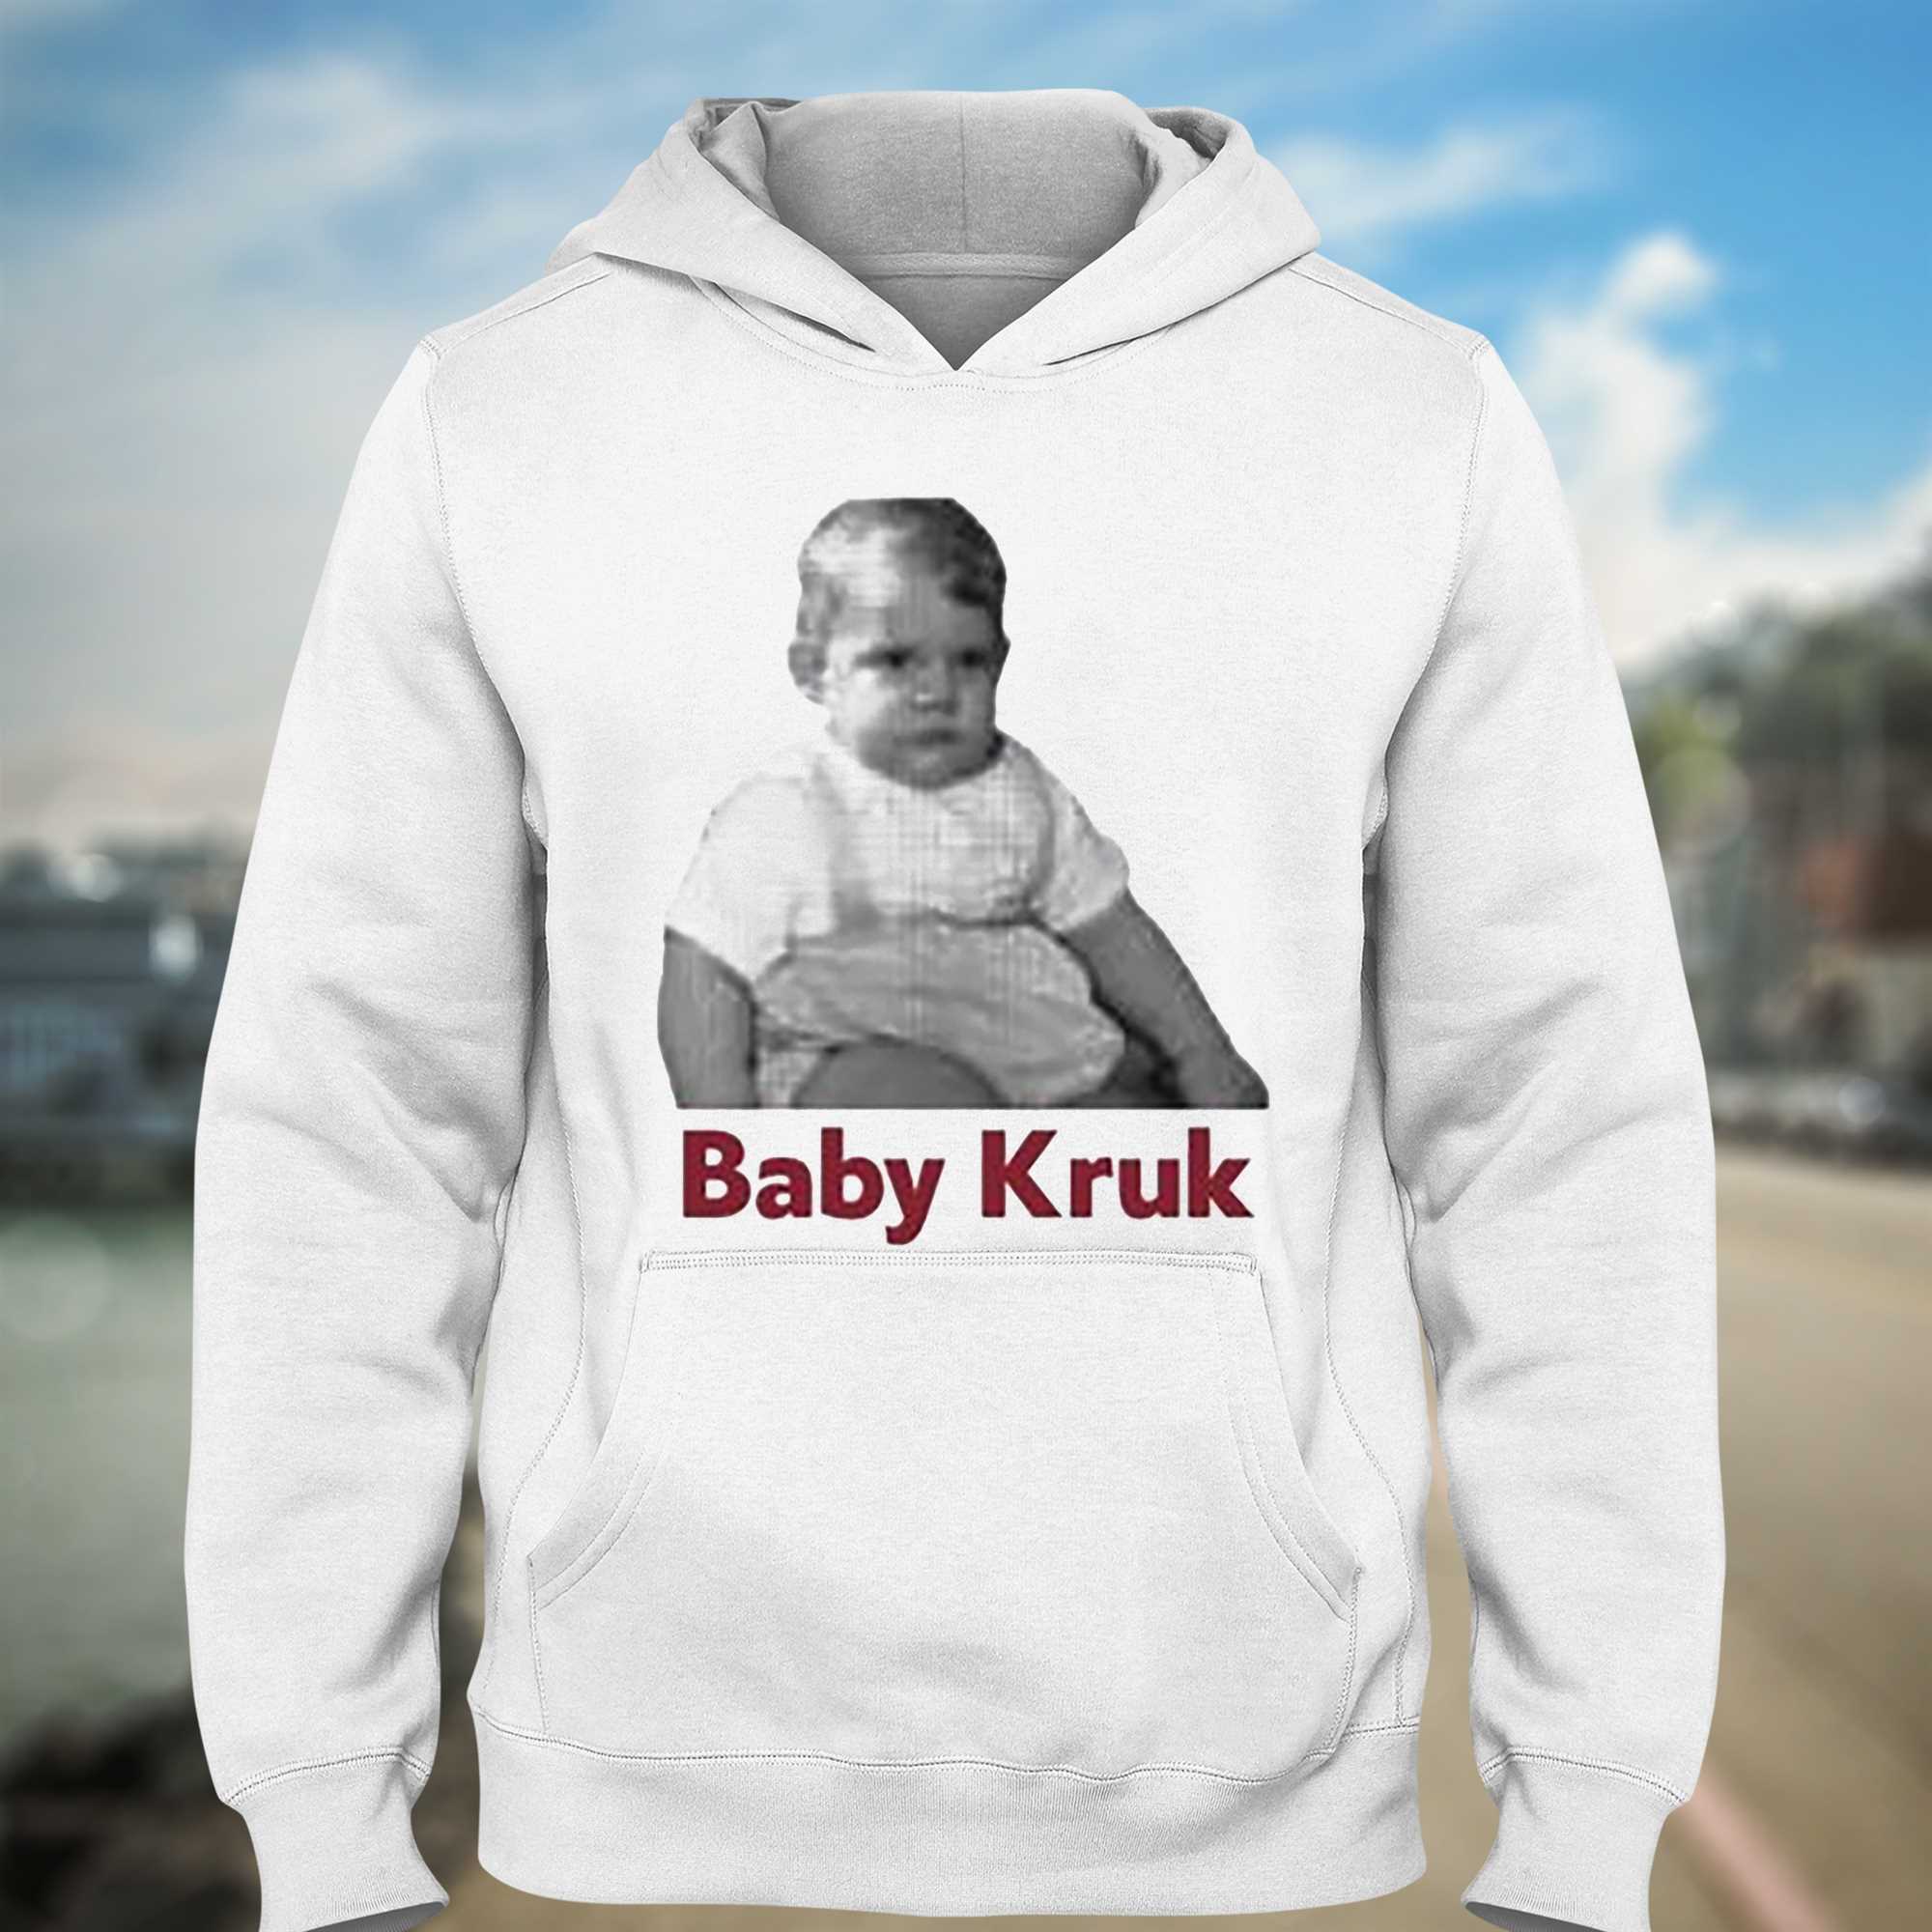 Baby Kruk T-shirt